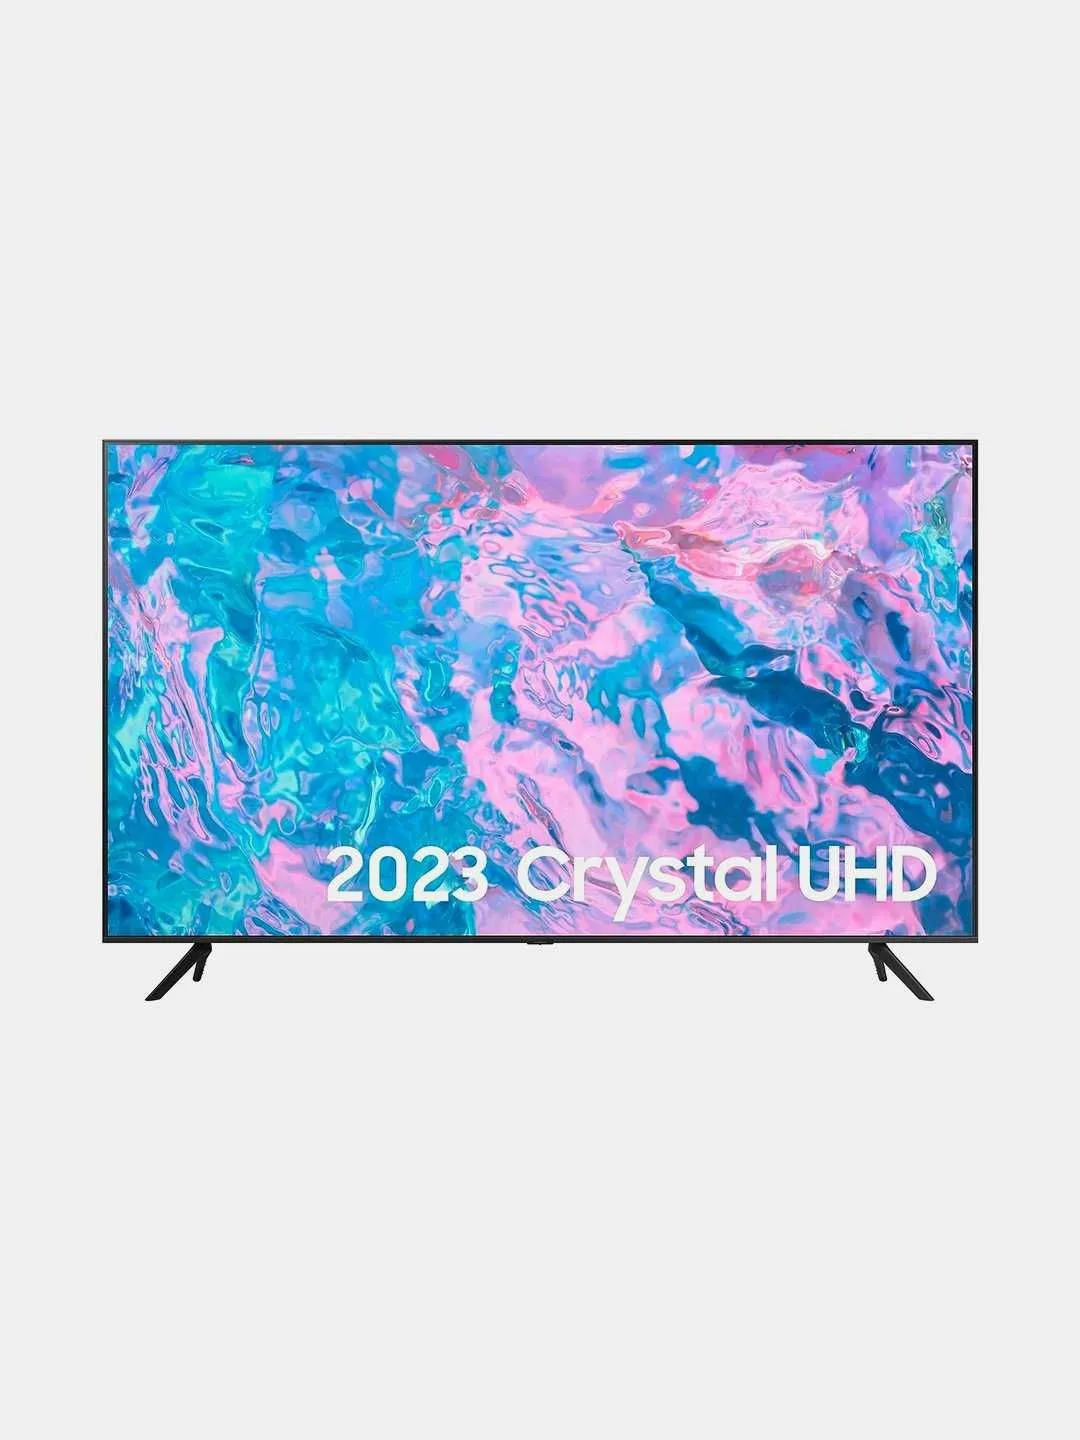 Телевизор Samsung 43" HD LED Smart TV#1